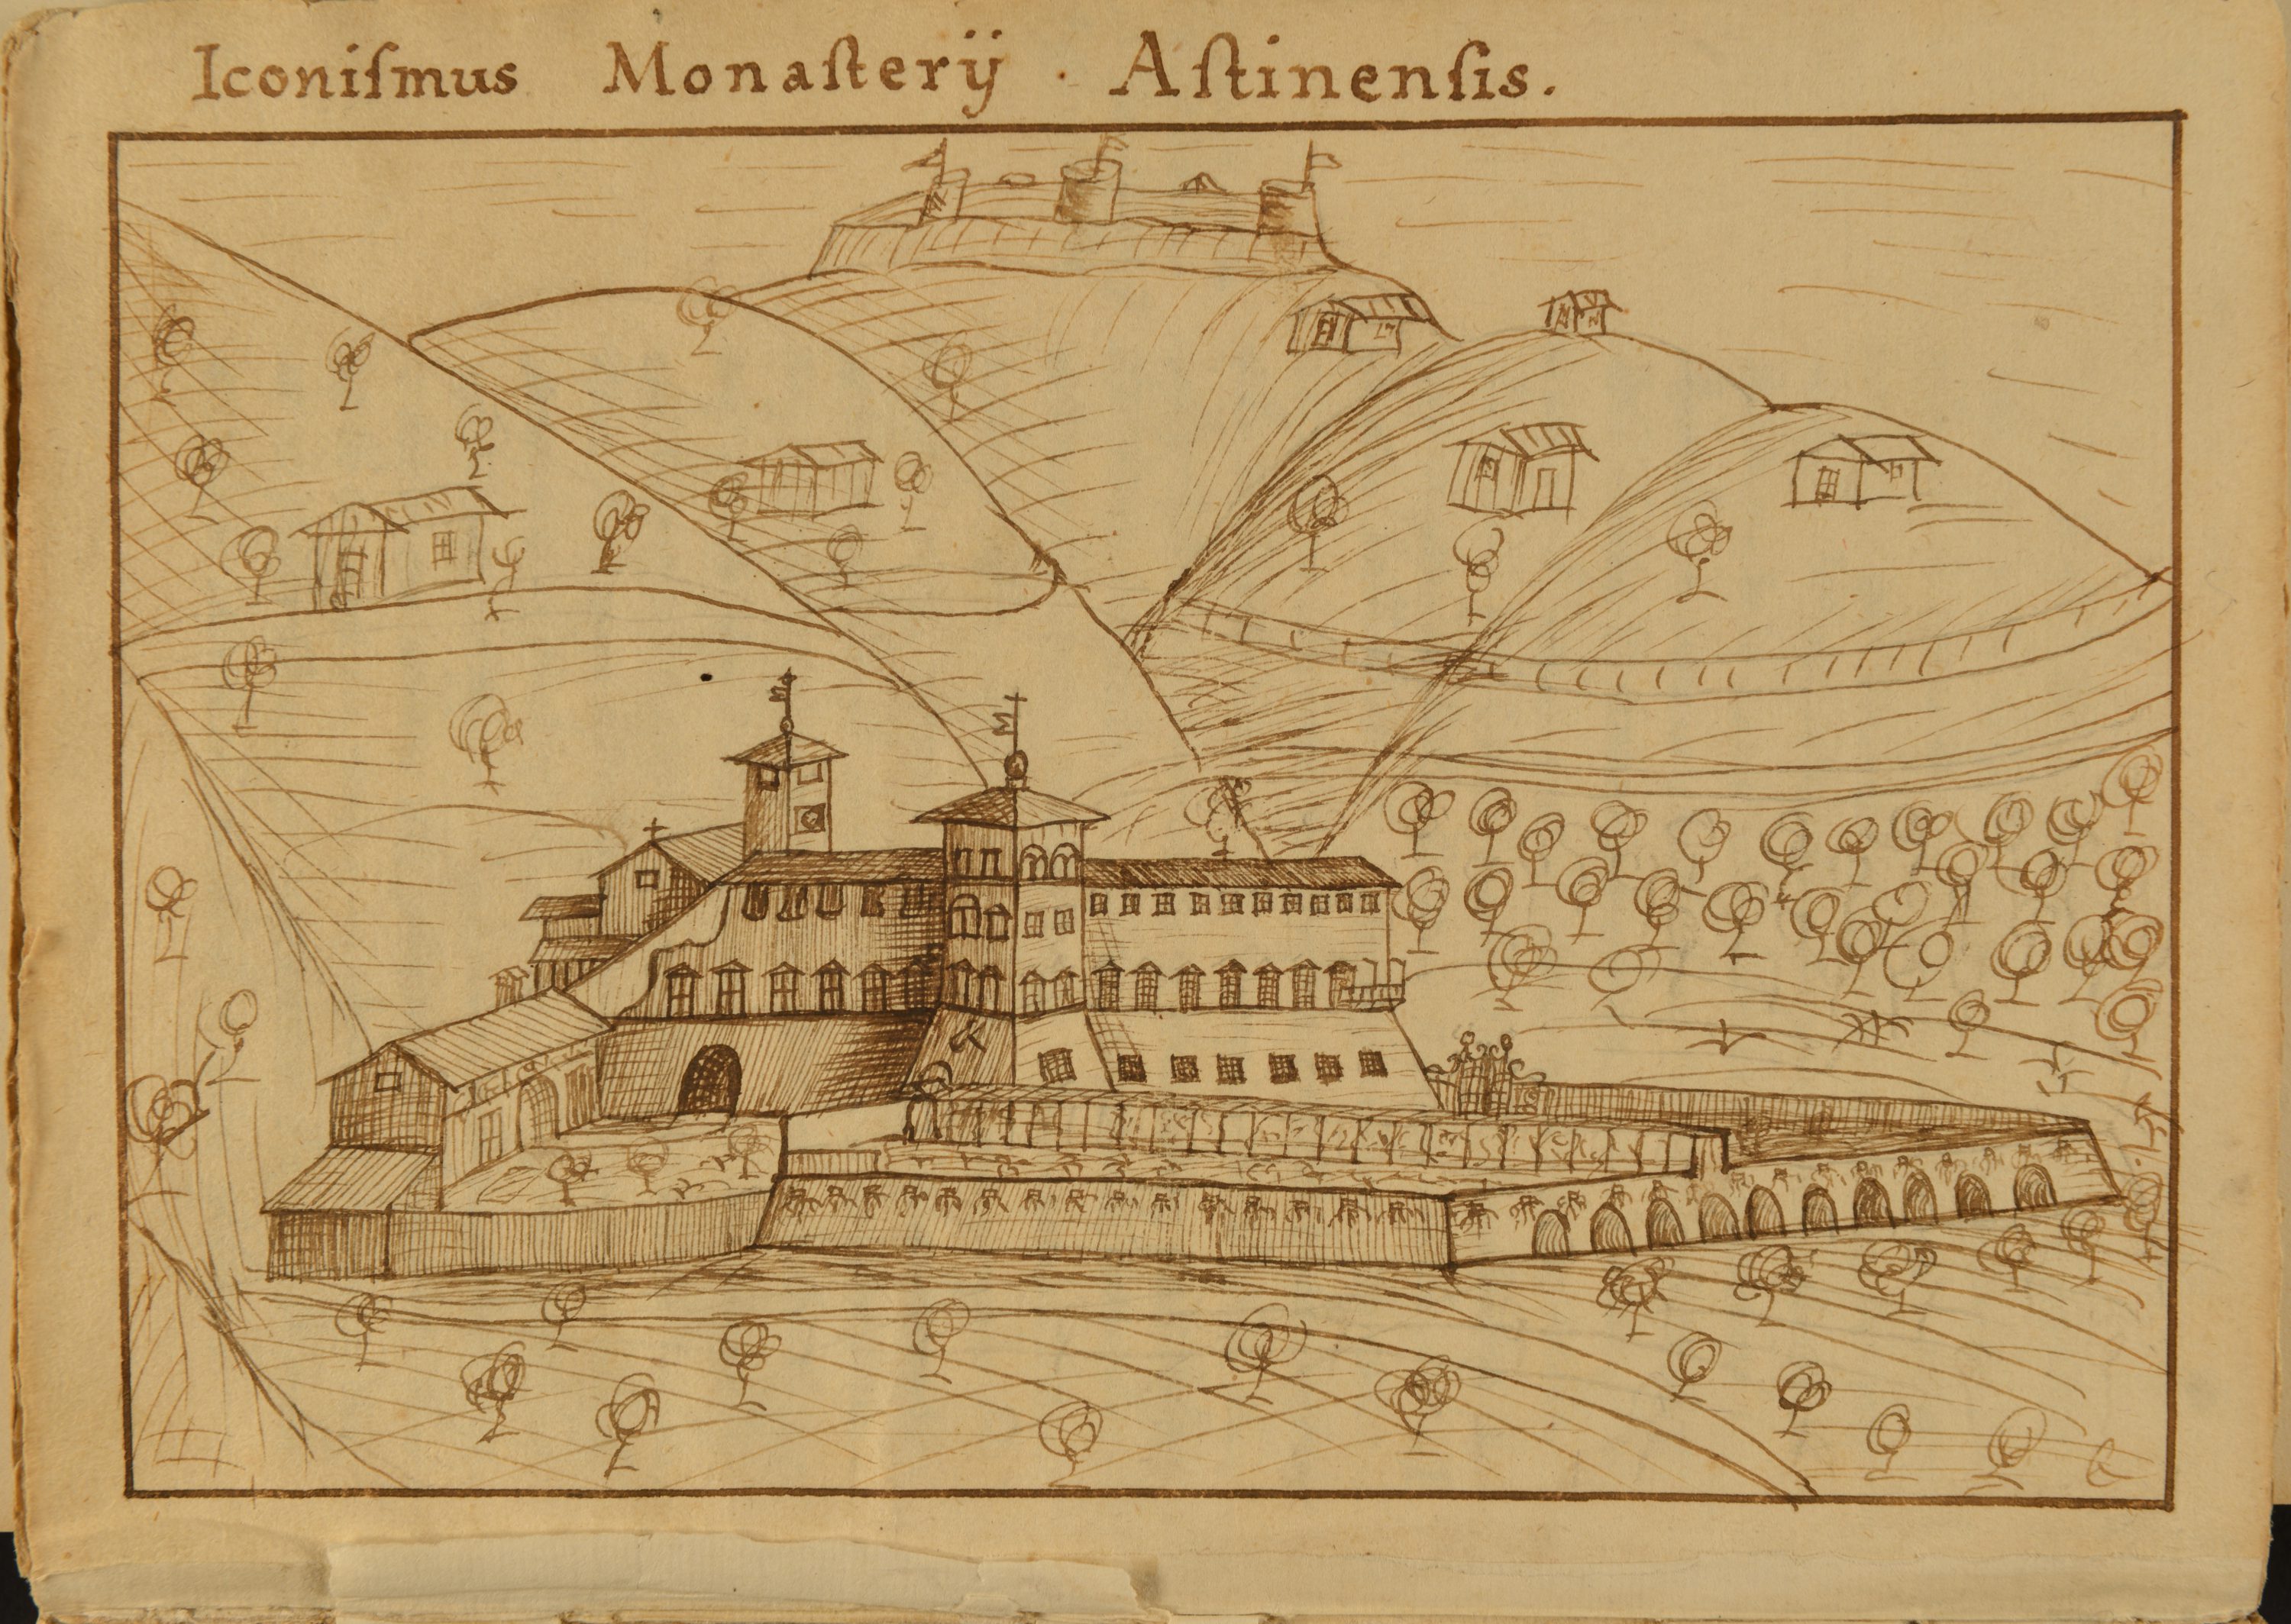 La valle di Astino e il monasteroin un disegno riportato nella "Istoria della badia di Astino" dell'abate G. Mazzoleni